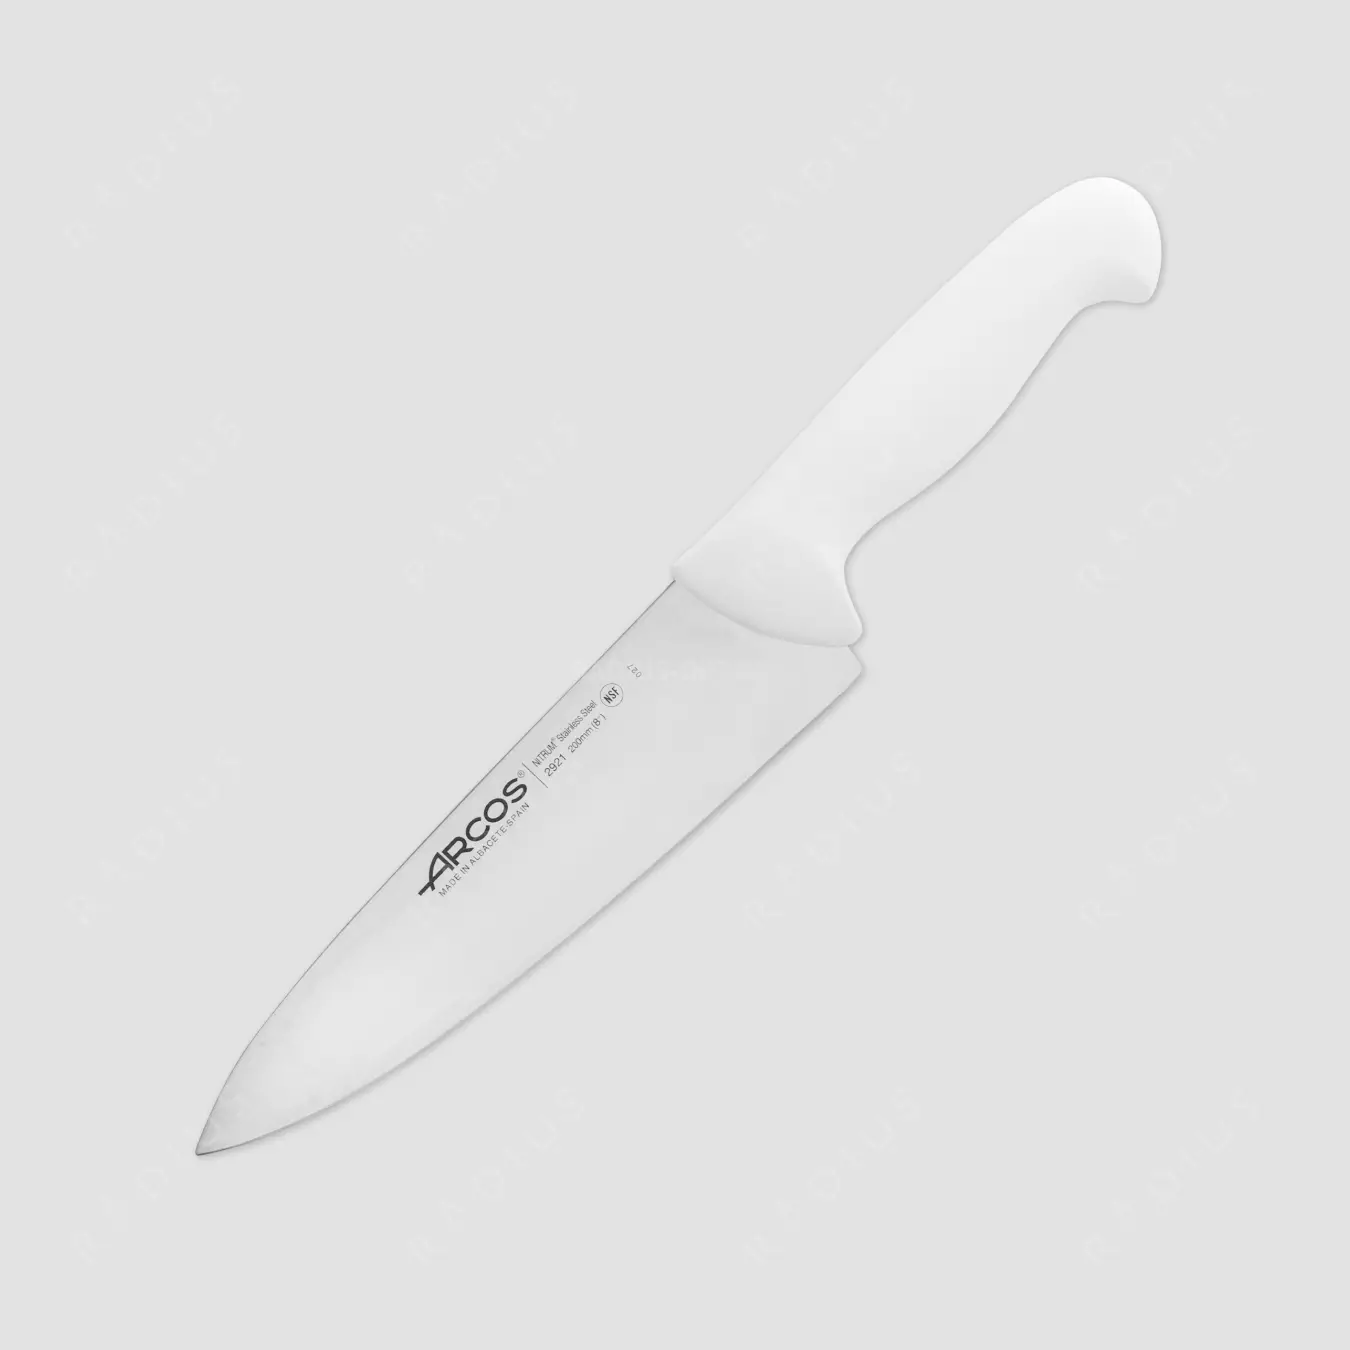 Facas de Arcos: Um conjunto de facas de cozinha da Espanha, espanhol forjado chefs da empresa arcos, faca de cozinheiro para queijo, comentários 25940_17